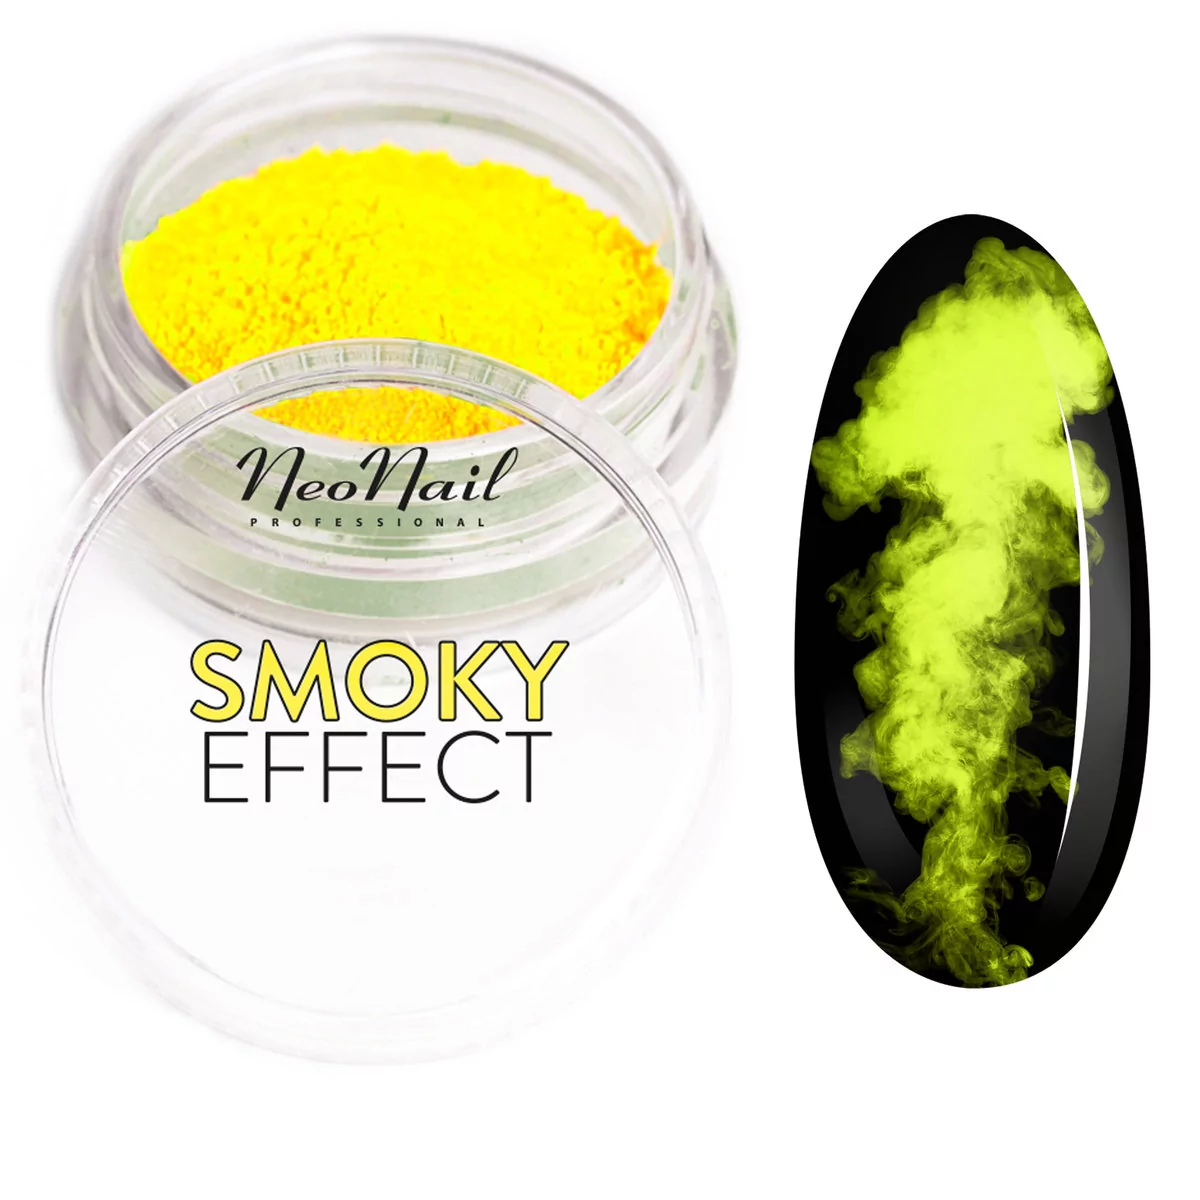 Neonail Smoky Effect - Neonowy pyłek do paznokci - 02 NEOEPPA-01-01-DOPA